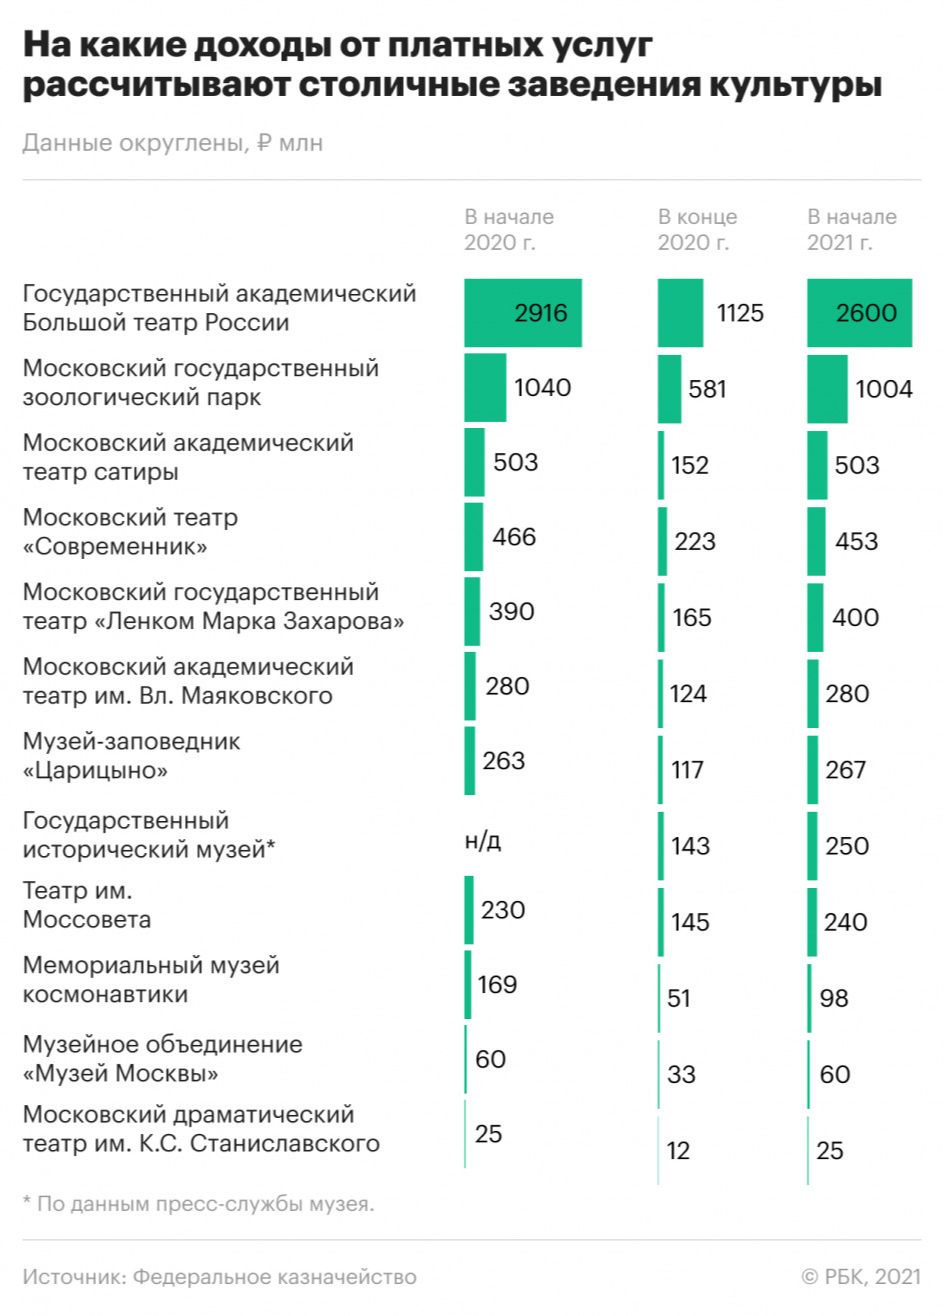 Как пандемия отразилась на доходах музеев и театров Москвы. Инфографика